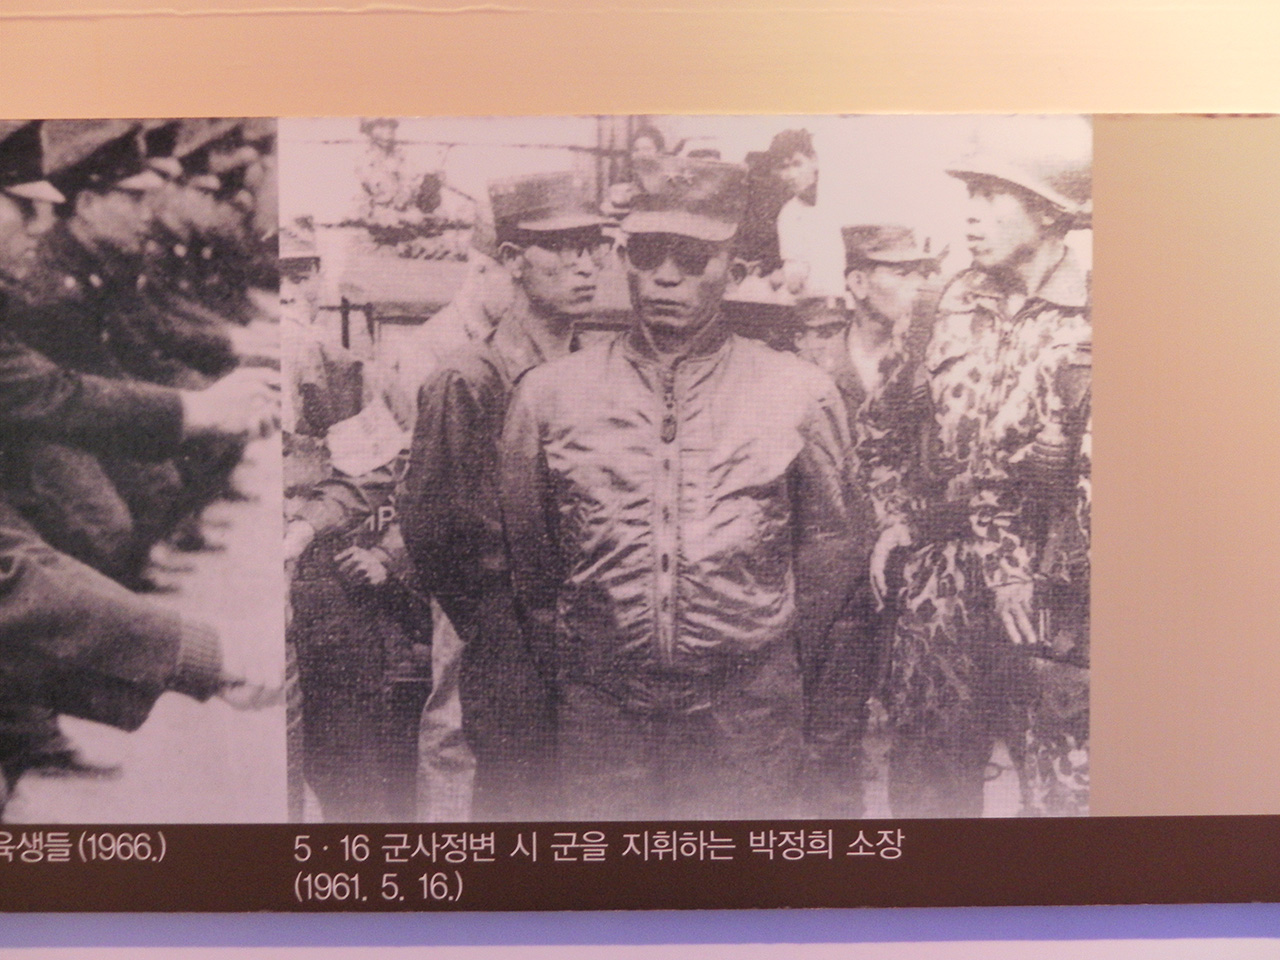  5·16 쿠데타. 서울시 종로구 신문로2가의 경찰박물관에서 찍은 사진. 